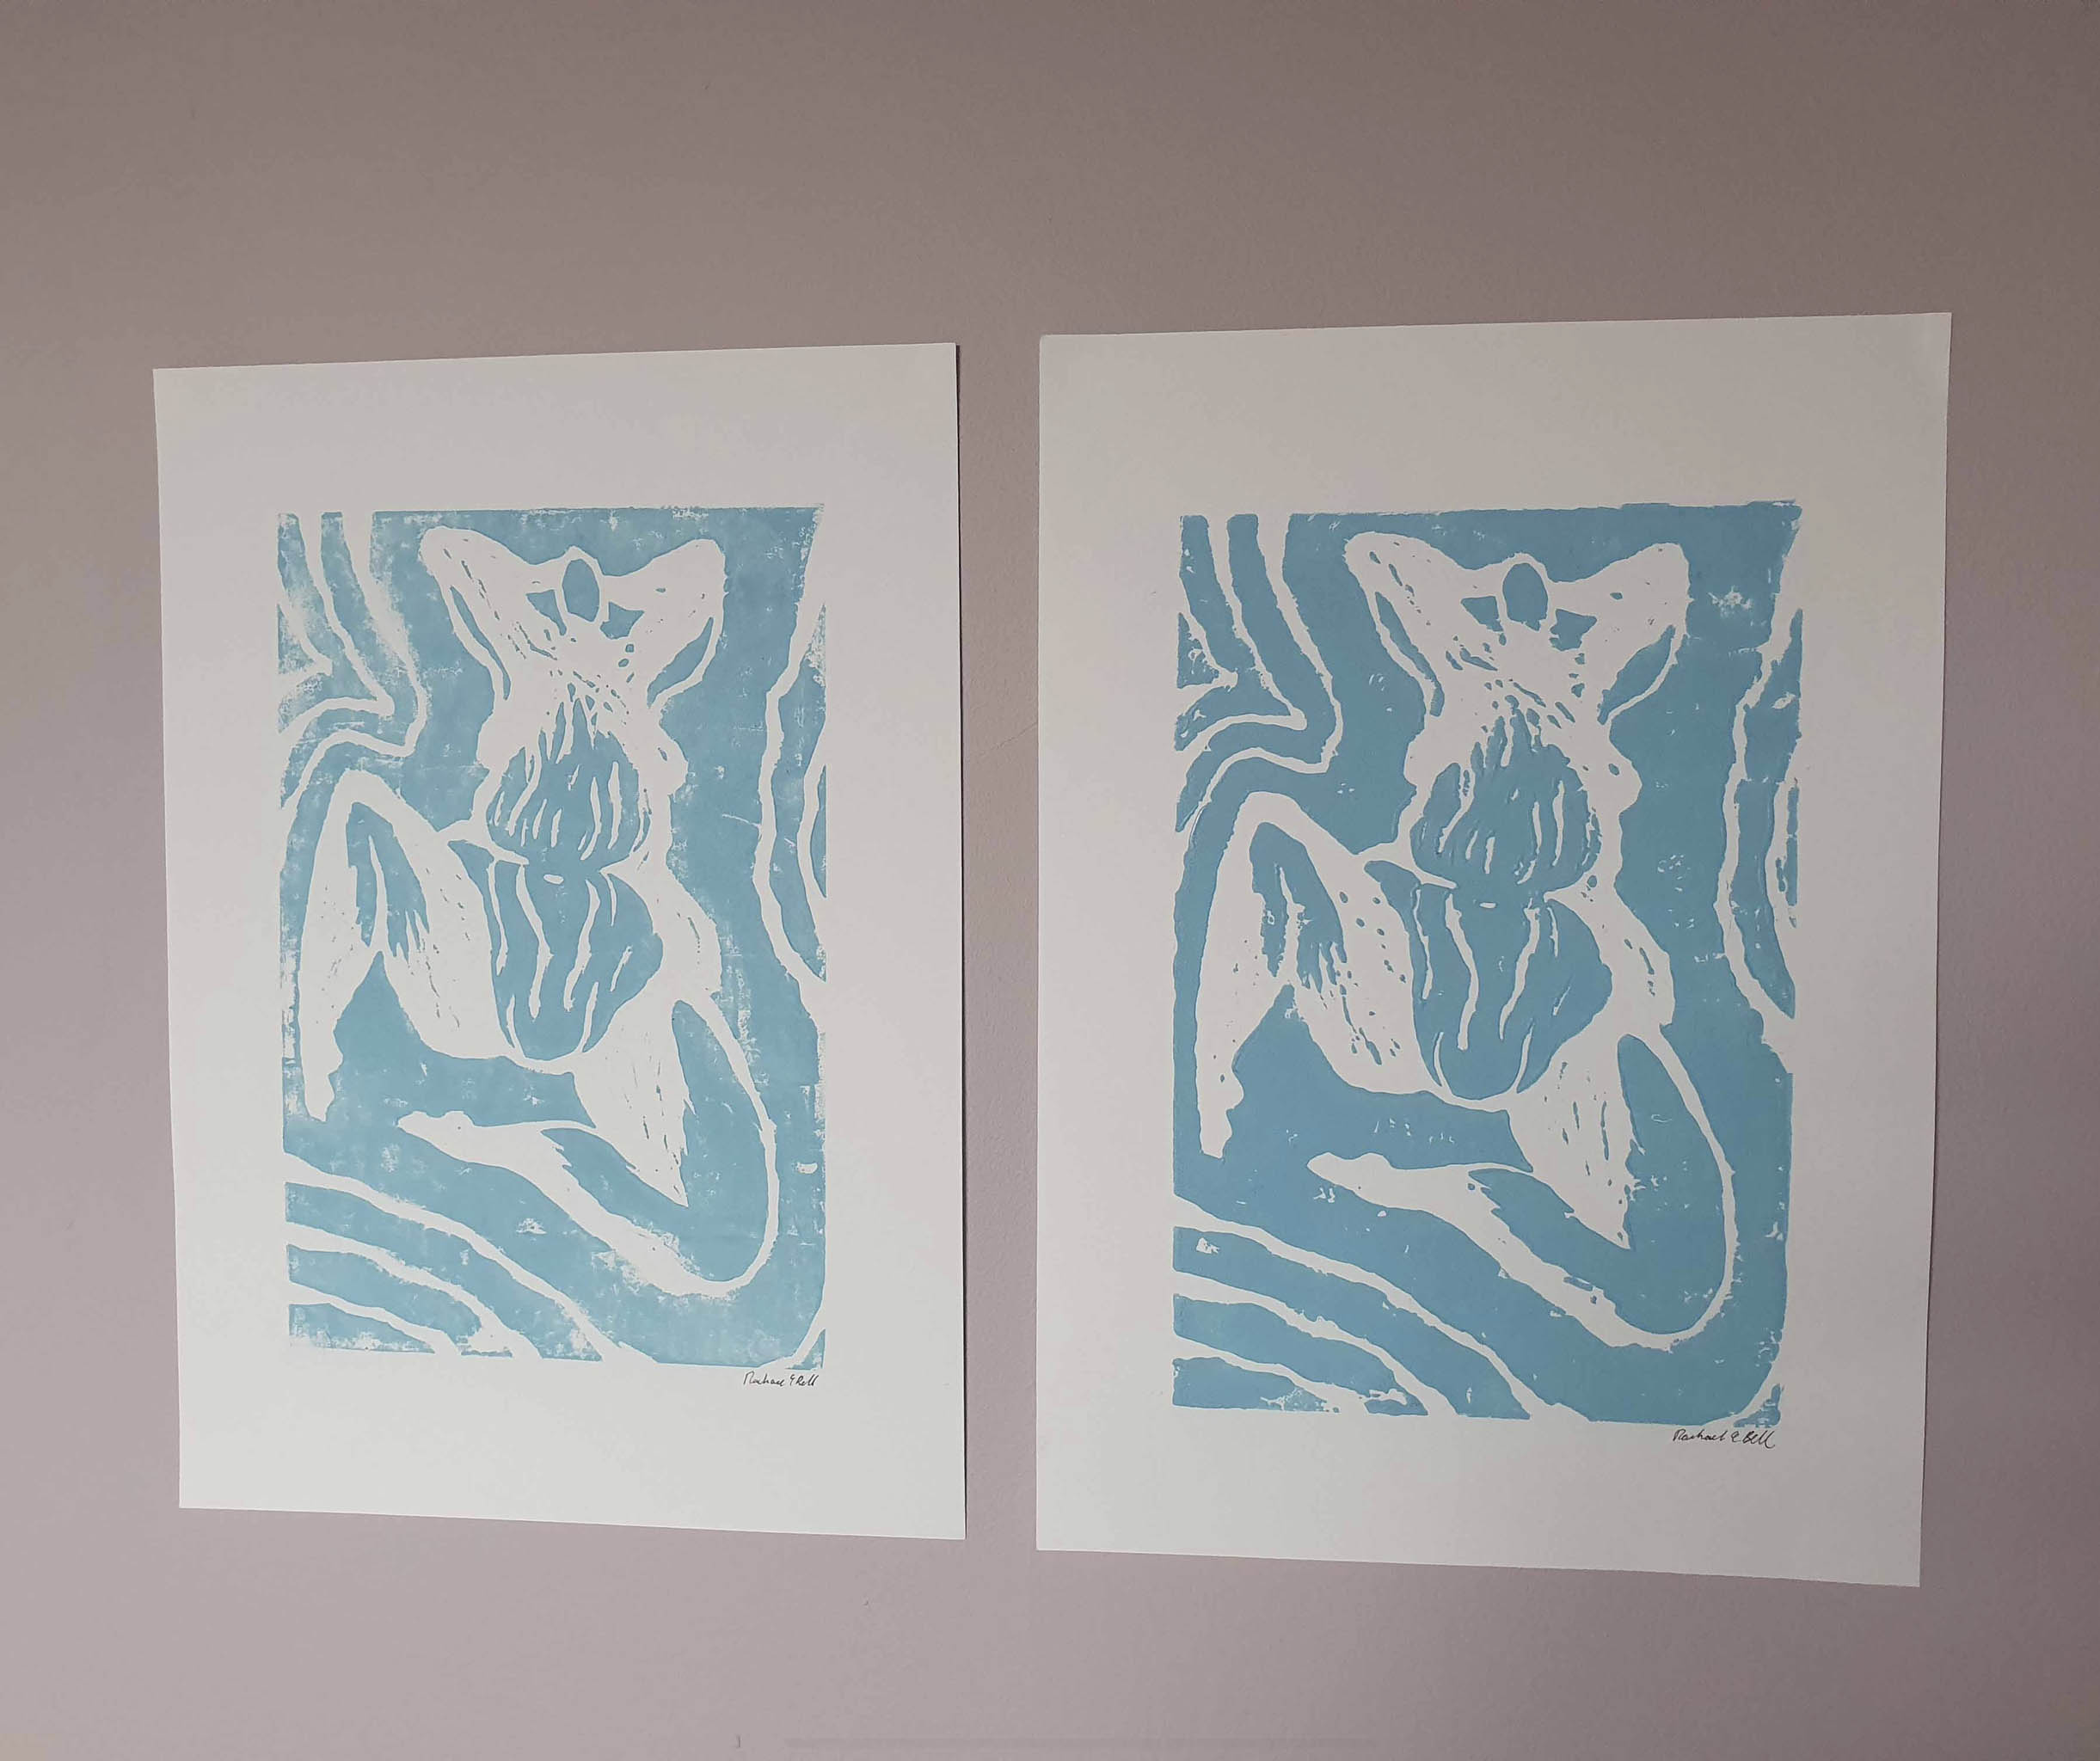 A3 Linocut Prints